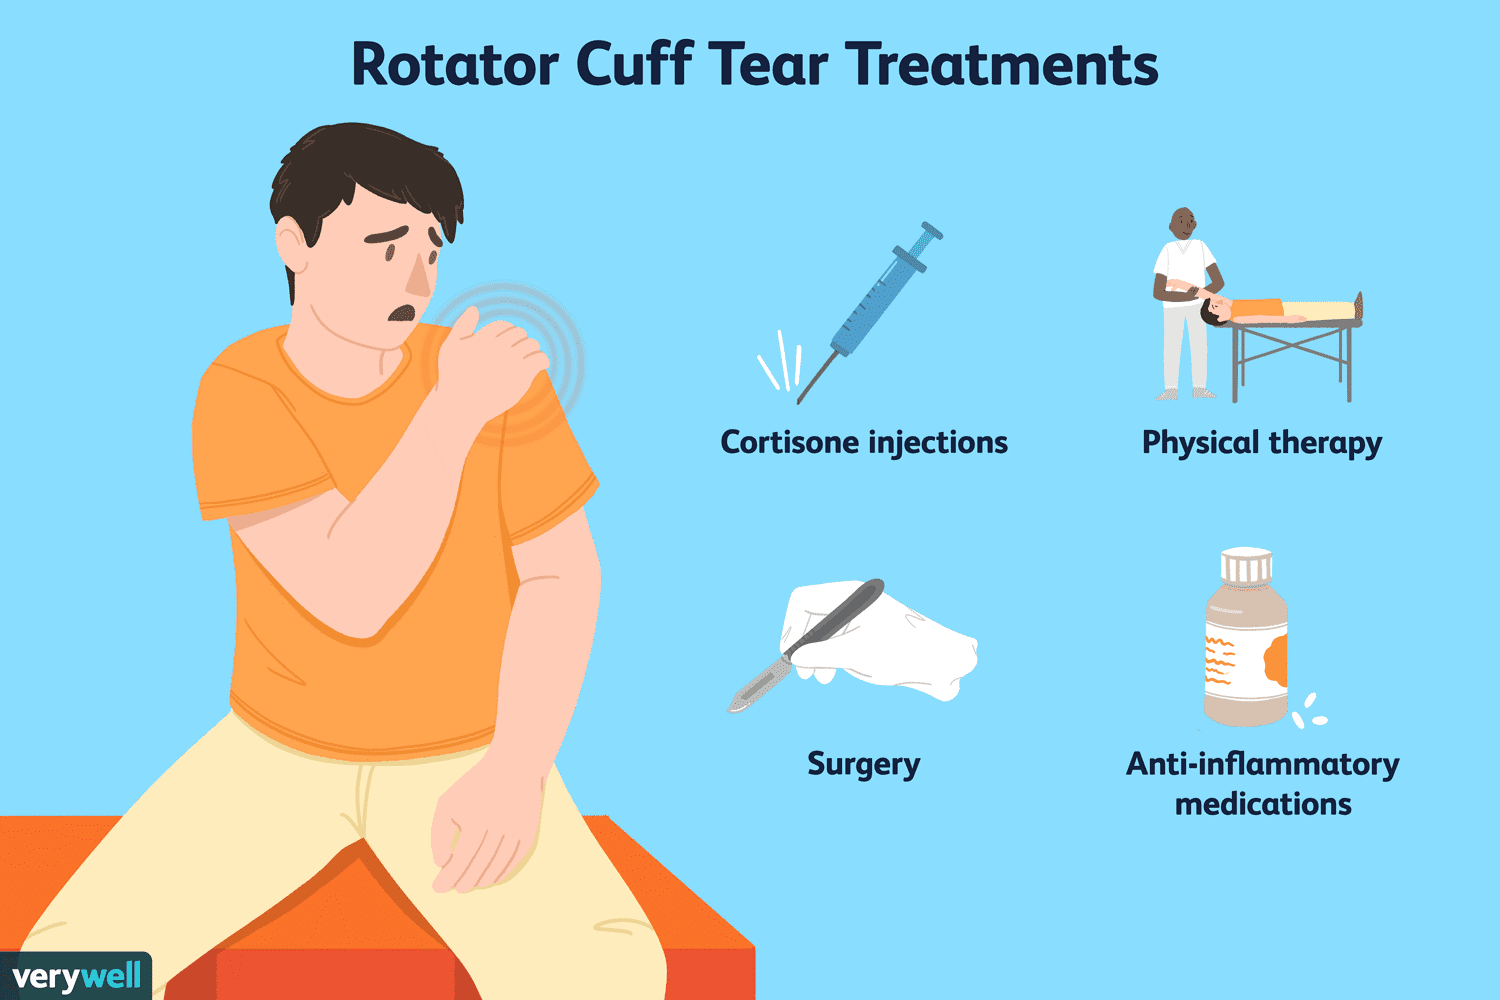 Rotator cuff tear treatments